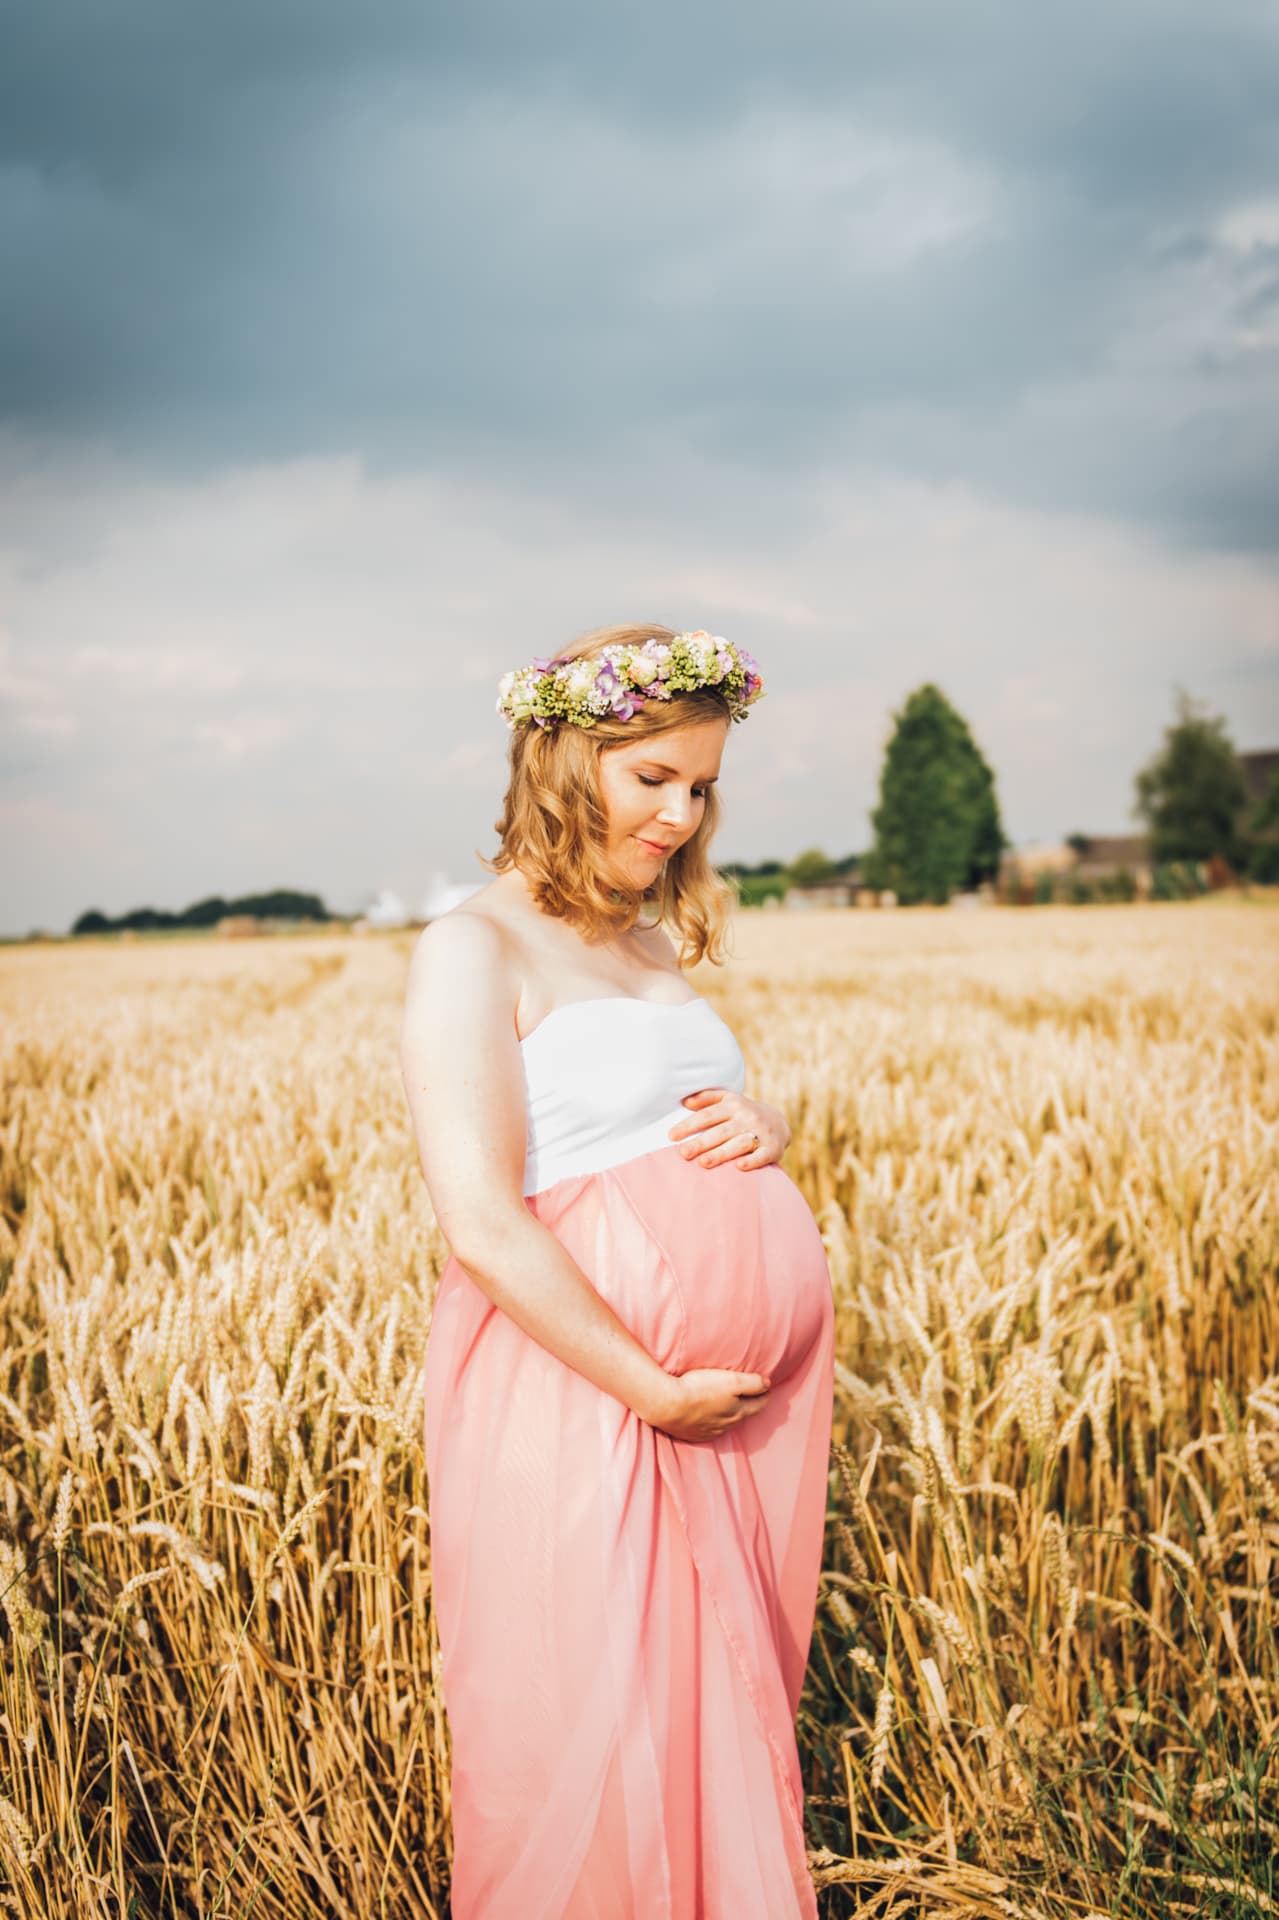 schwangerschaft-fotos-babybauch-5